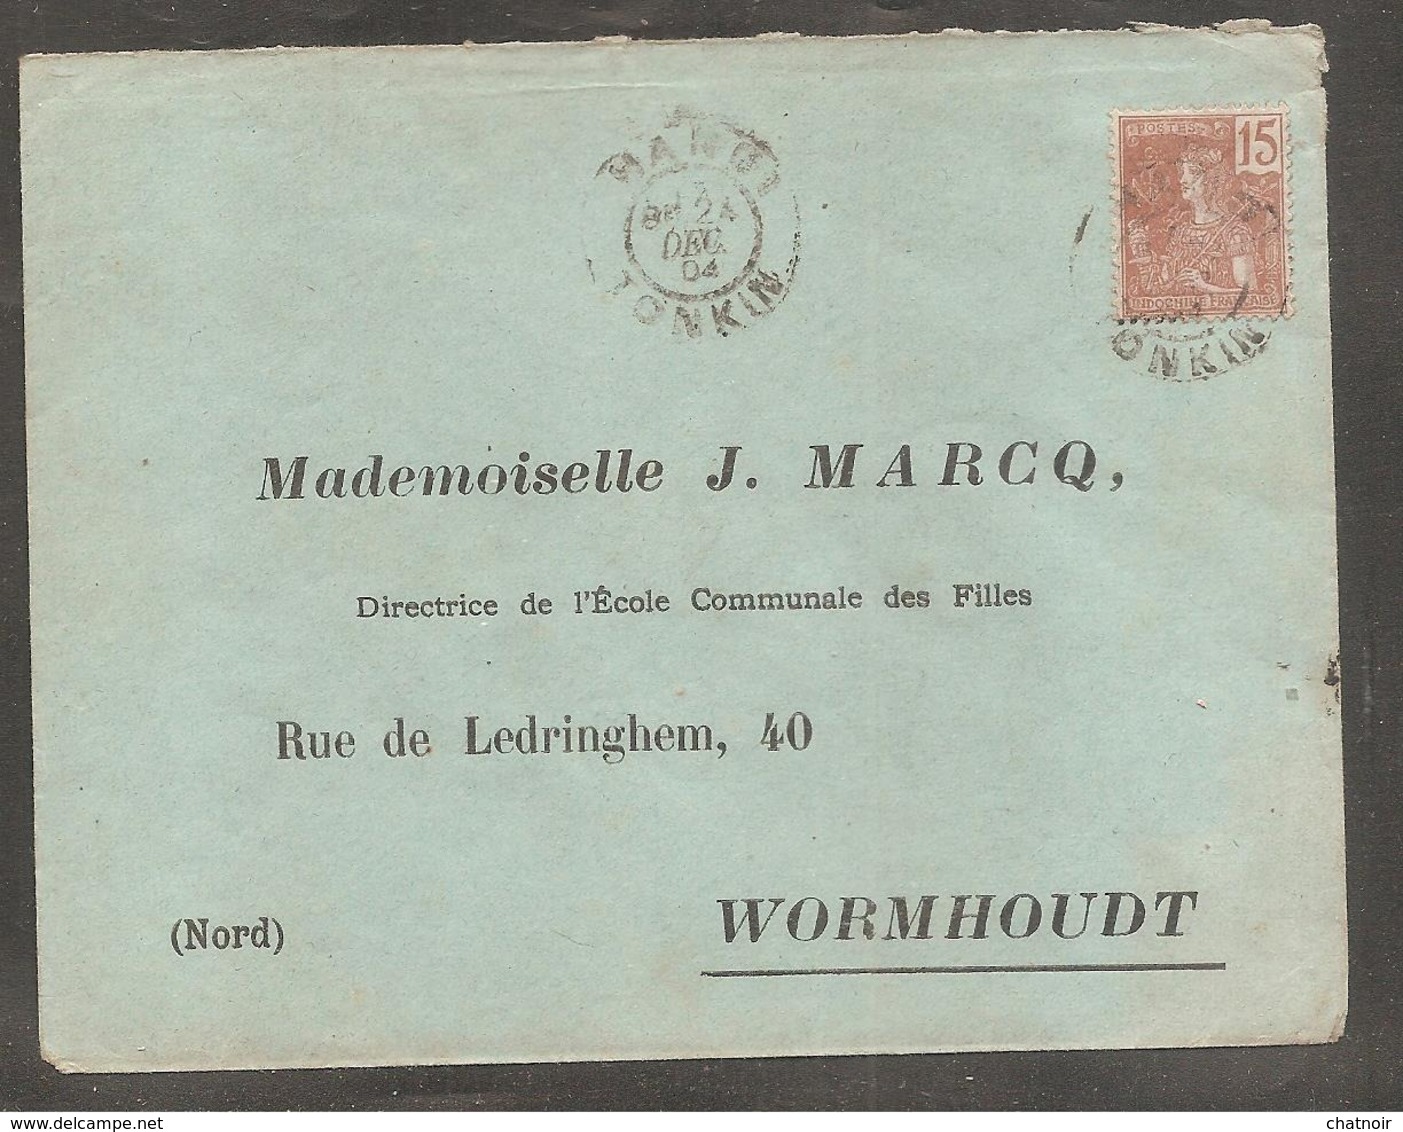 Enveloppe  Avec Timbre Indochine Francaise  Oblit  HANOI  TONKIN  1904  Pour  Wormhoudt   Nord - Sonstige - Asien